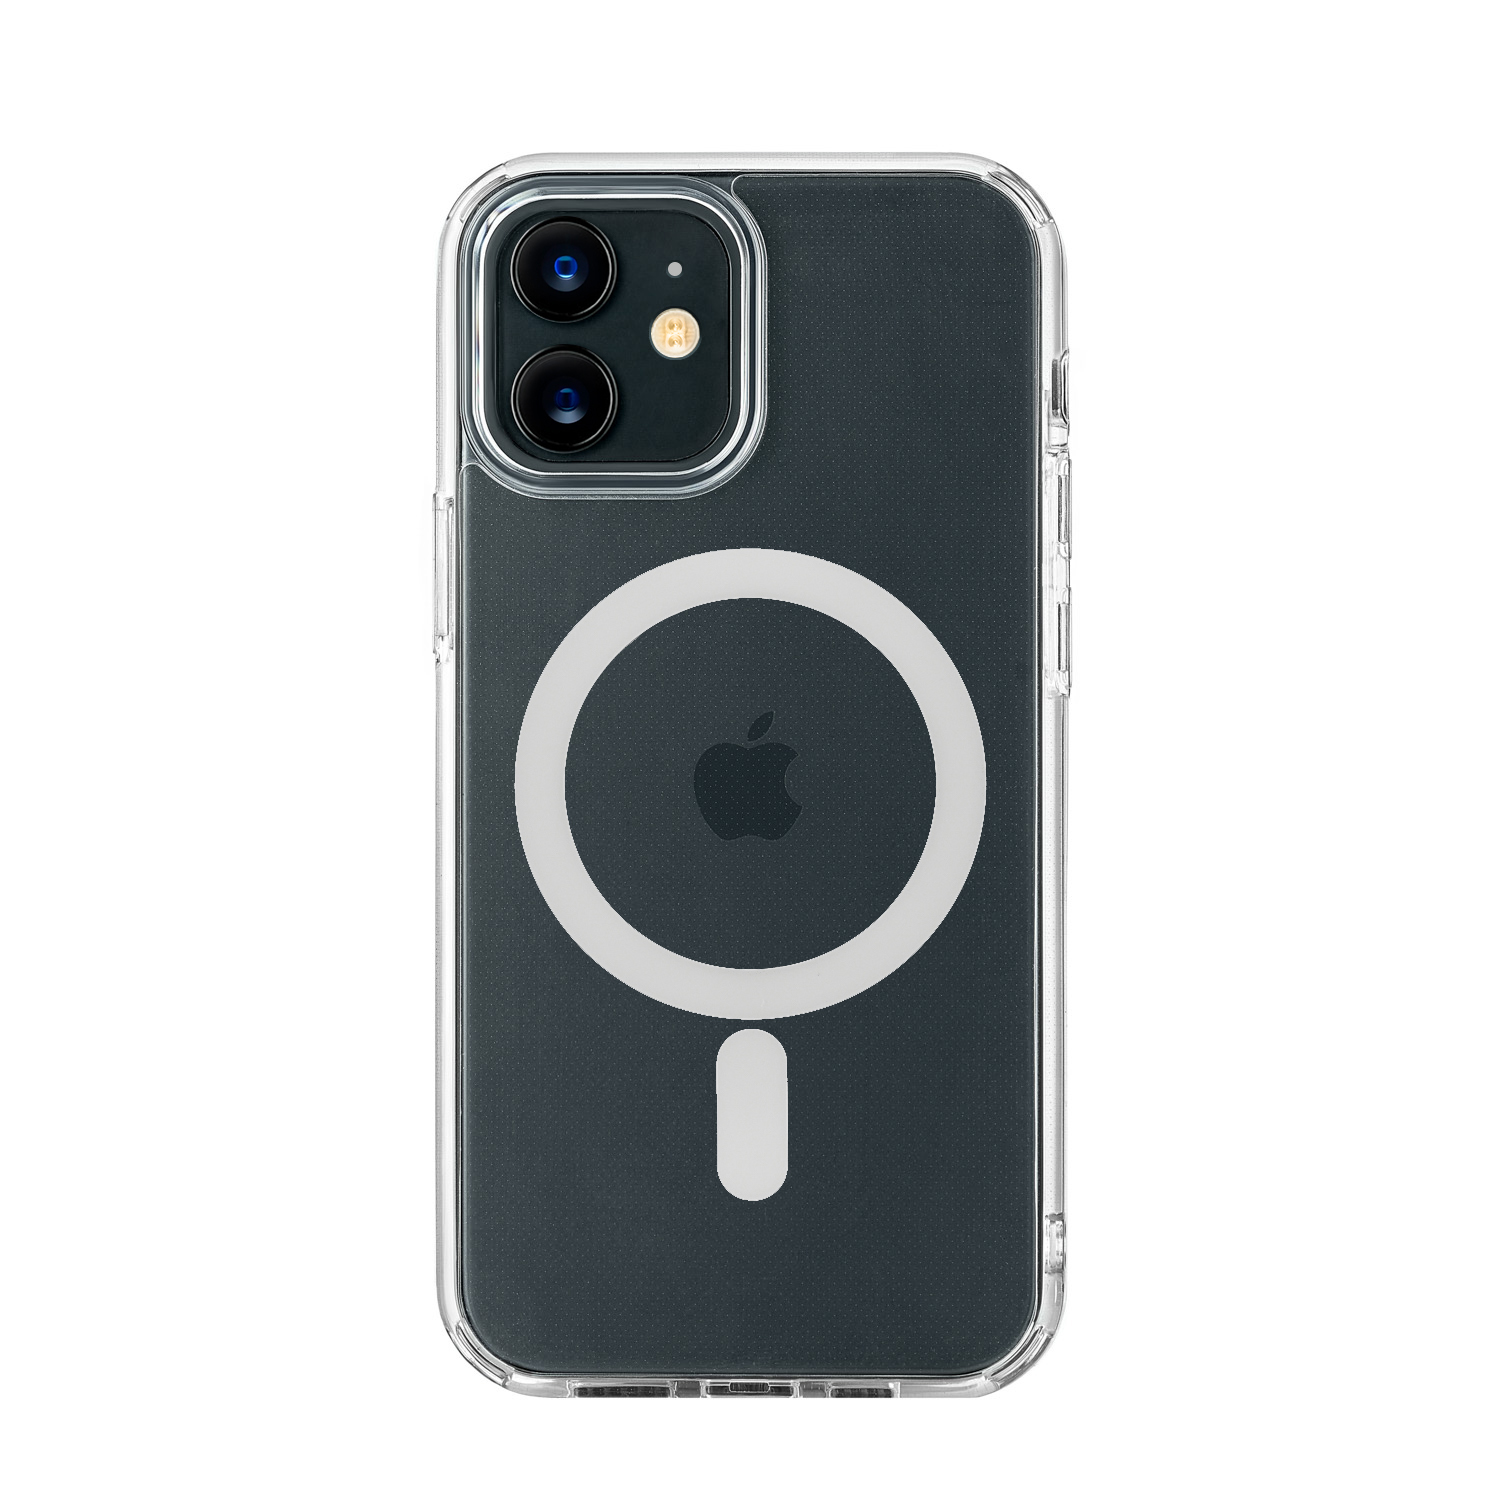 Чехол uBear для iPhone 12 / 12 Pro, Real Mag Case, чехол защитный усиленный, прозрачный, купить в Москве, цены в интернет-магазинах на Мегамаркет